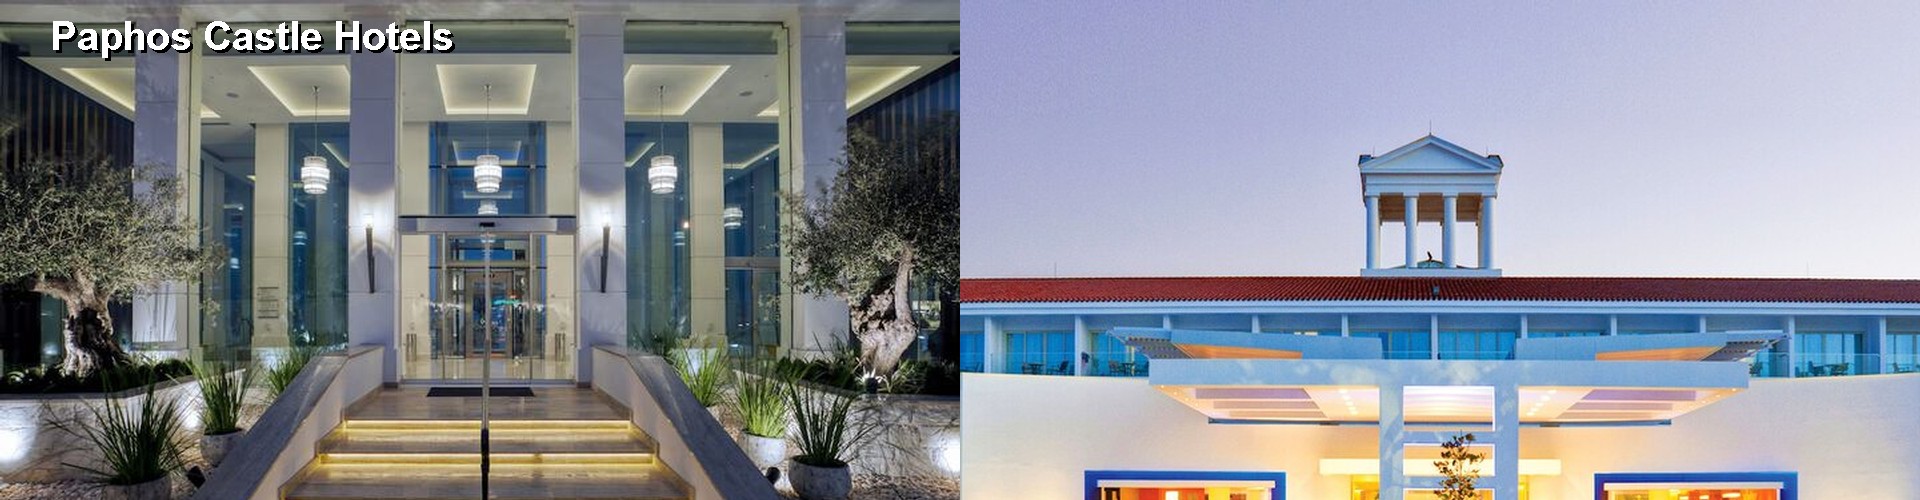 5 Best Hotels near Paphos Castle